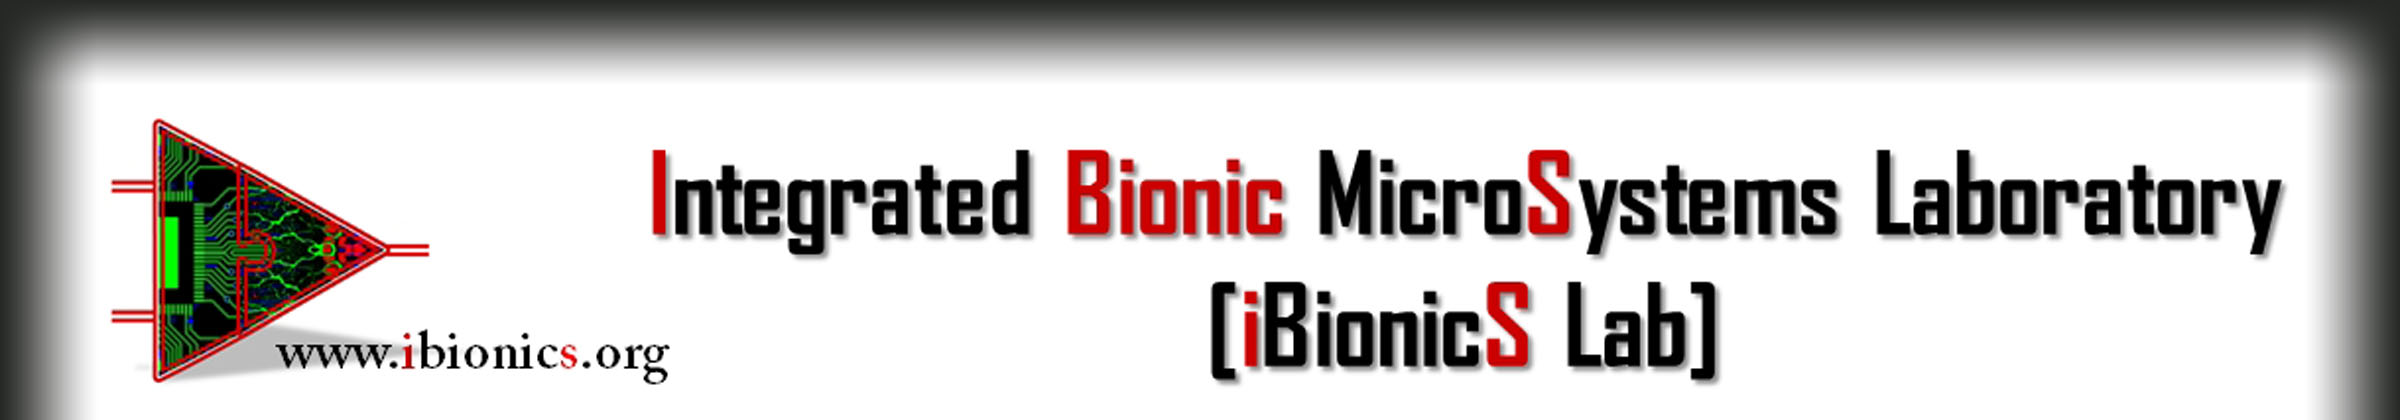 iBionics logo